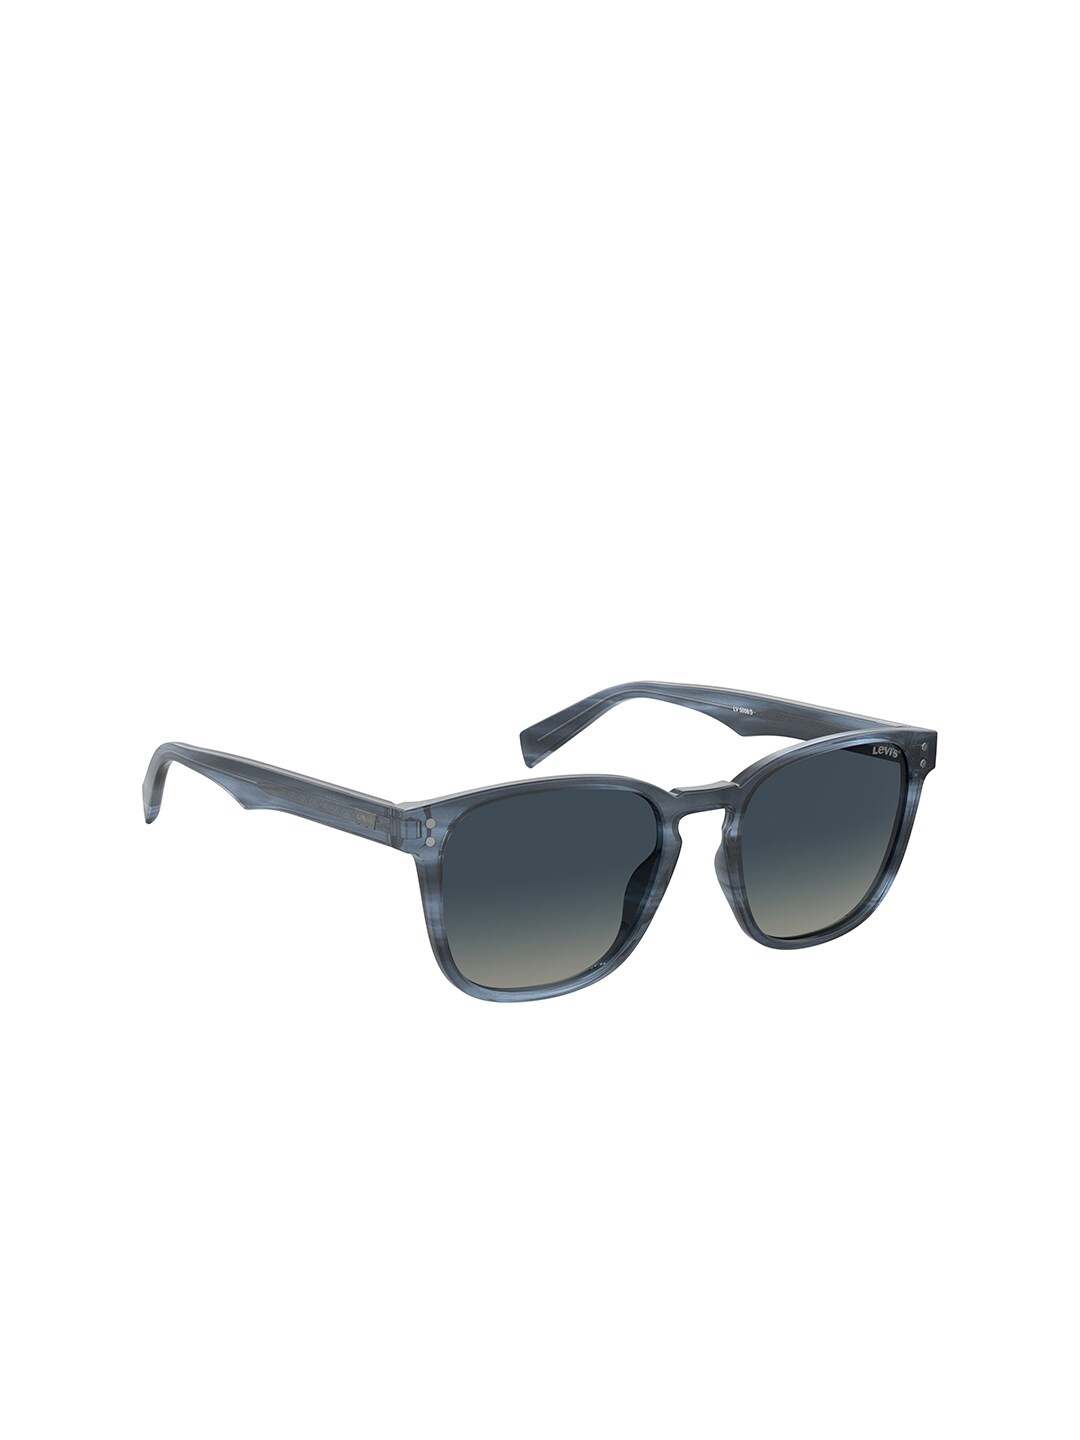 Levis Unisex Blue Lens & Blue UV Protected Lens Wayfarer Sunglasses LV 5008/S 38I 51UY Price in India